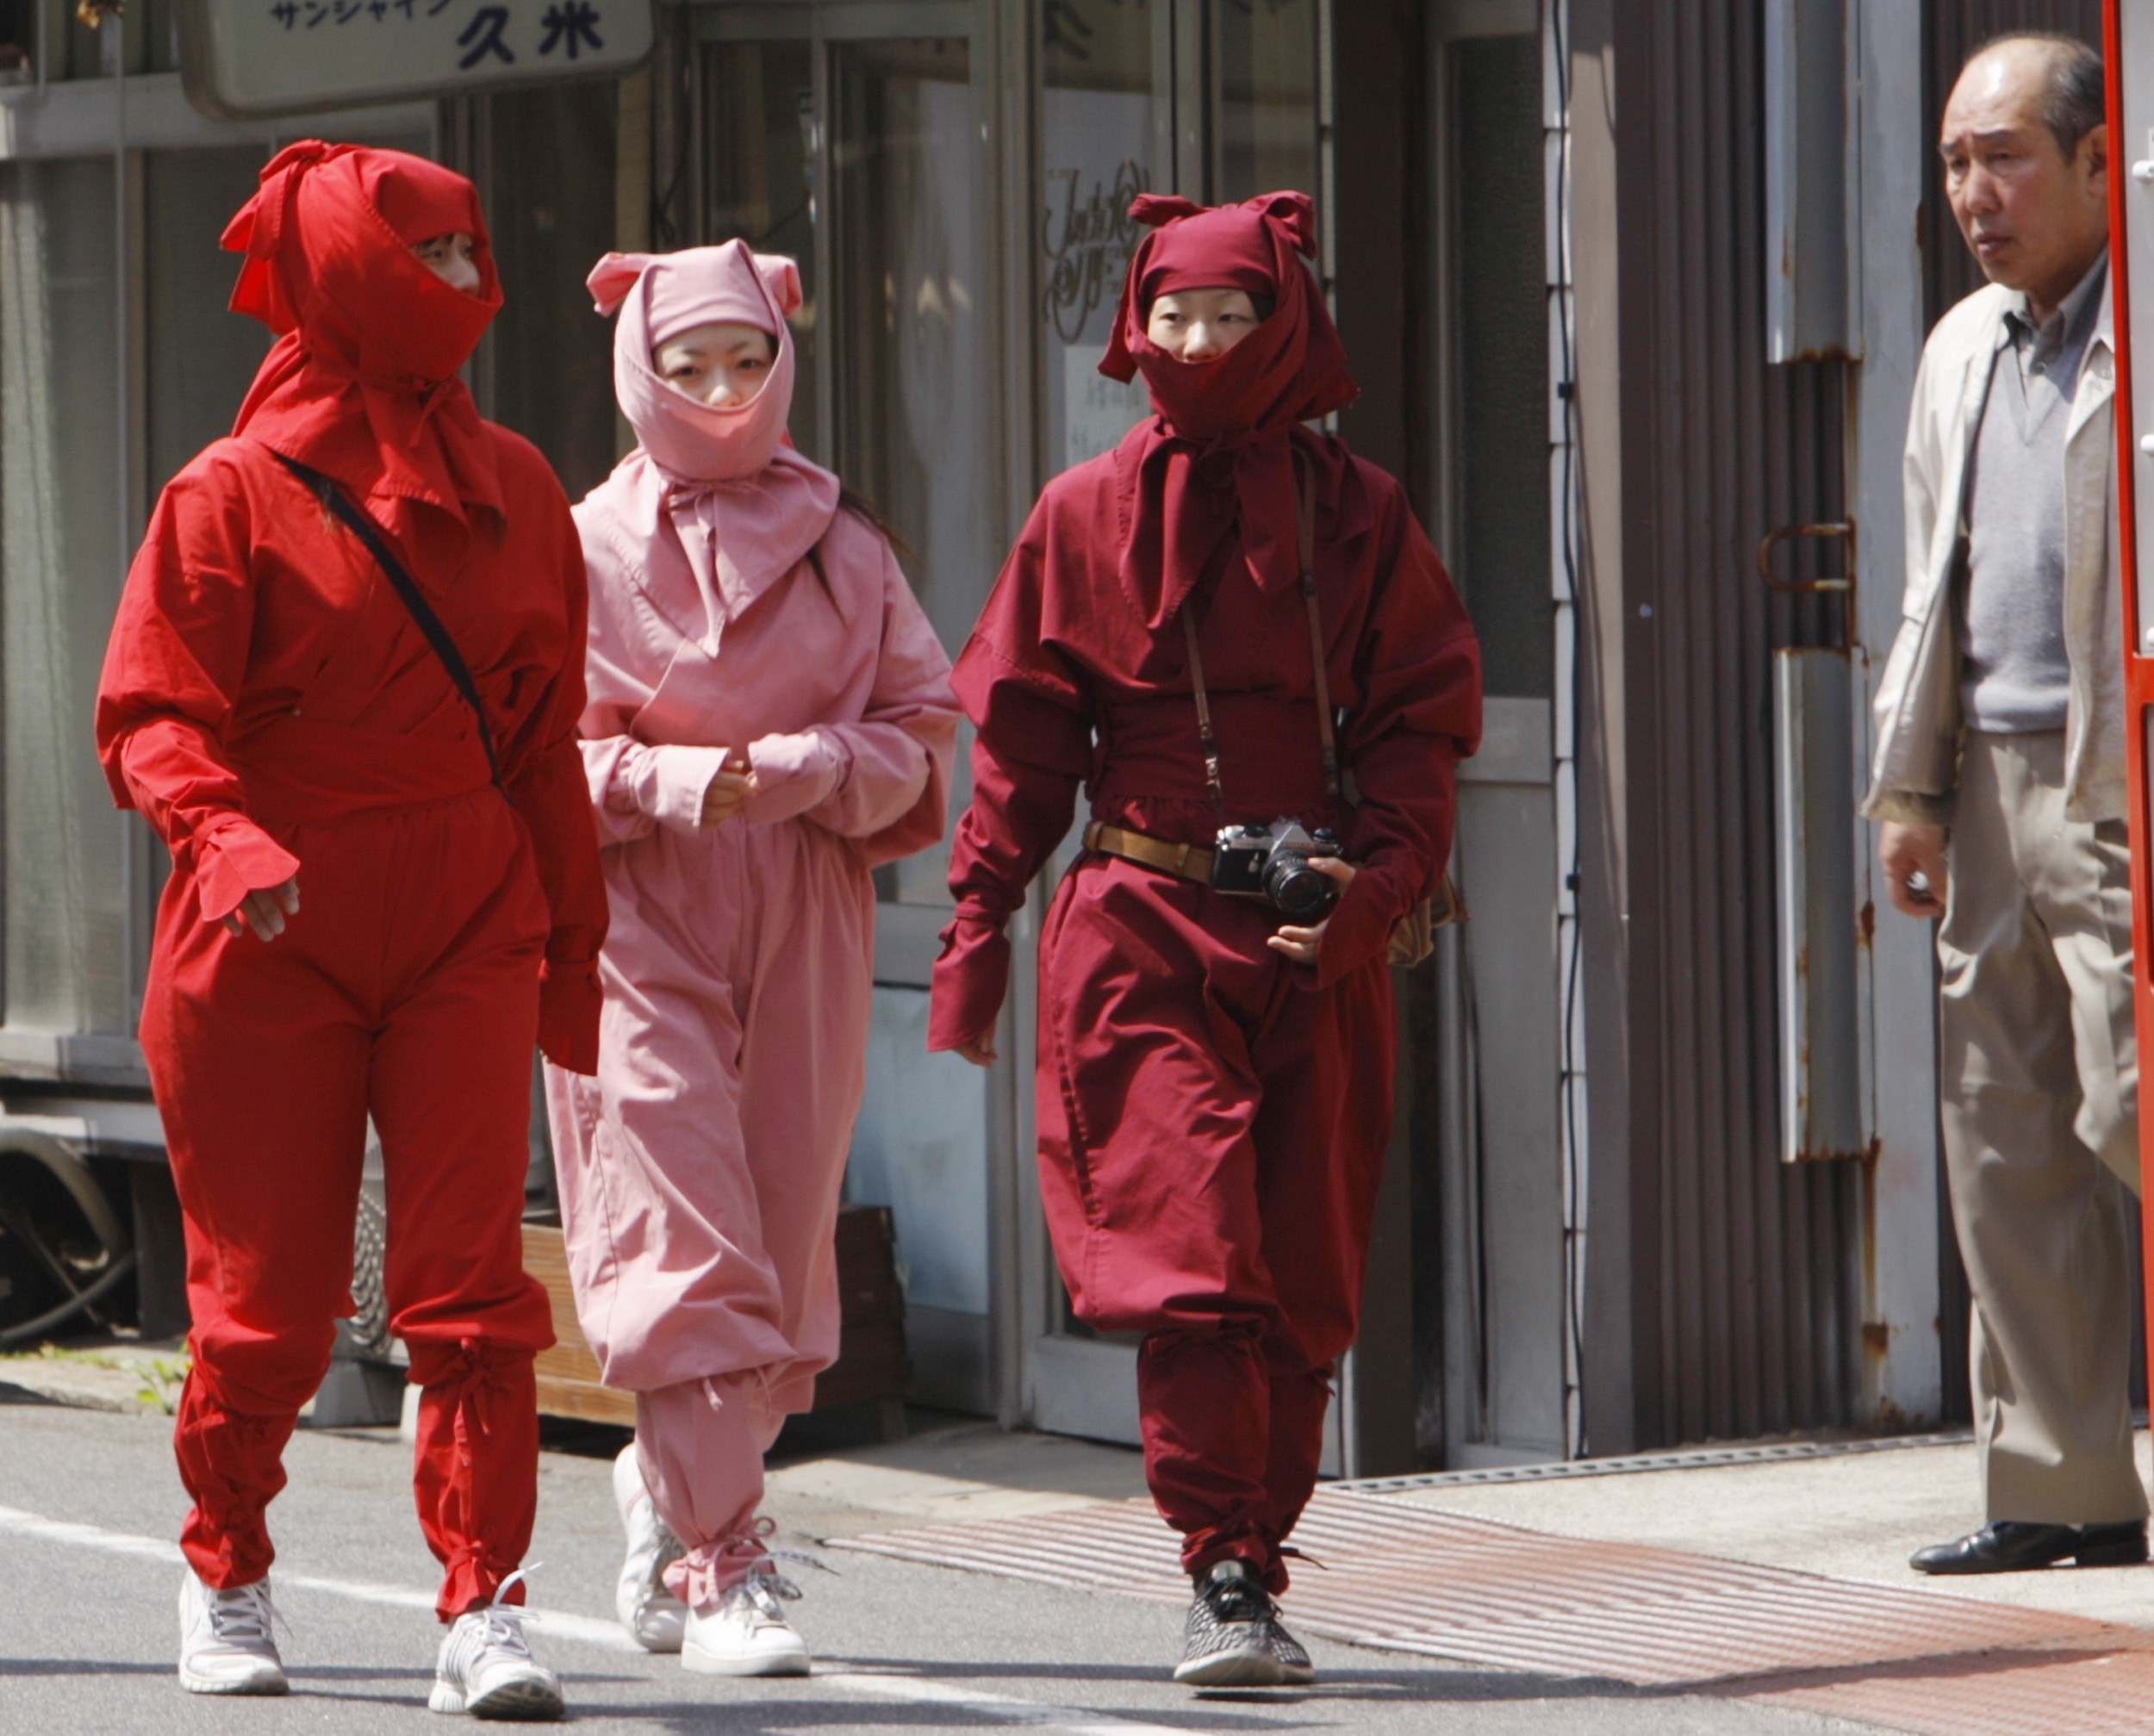 Ninja festival in Japan